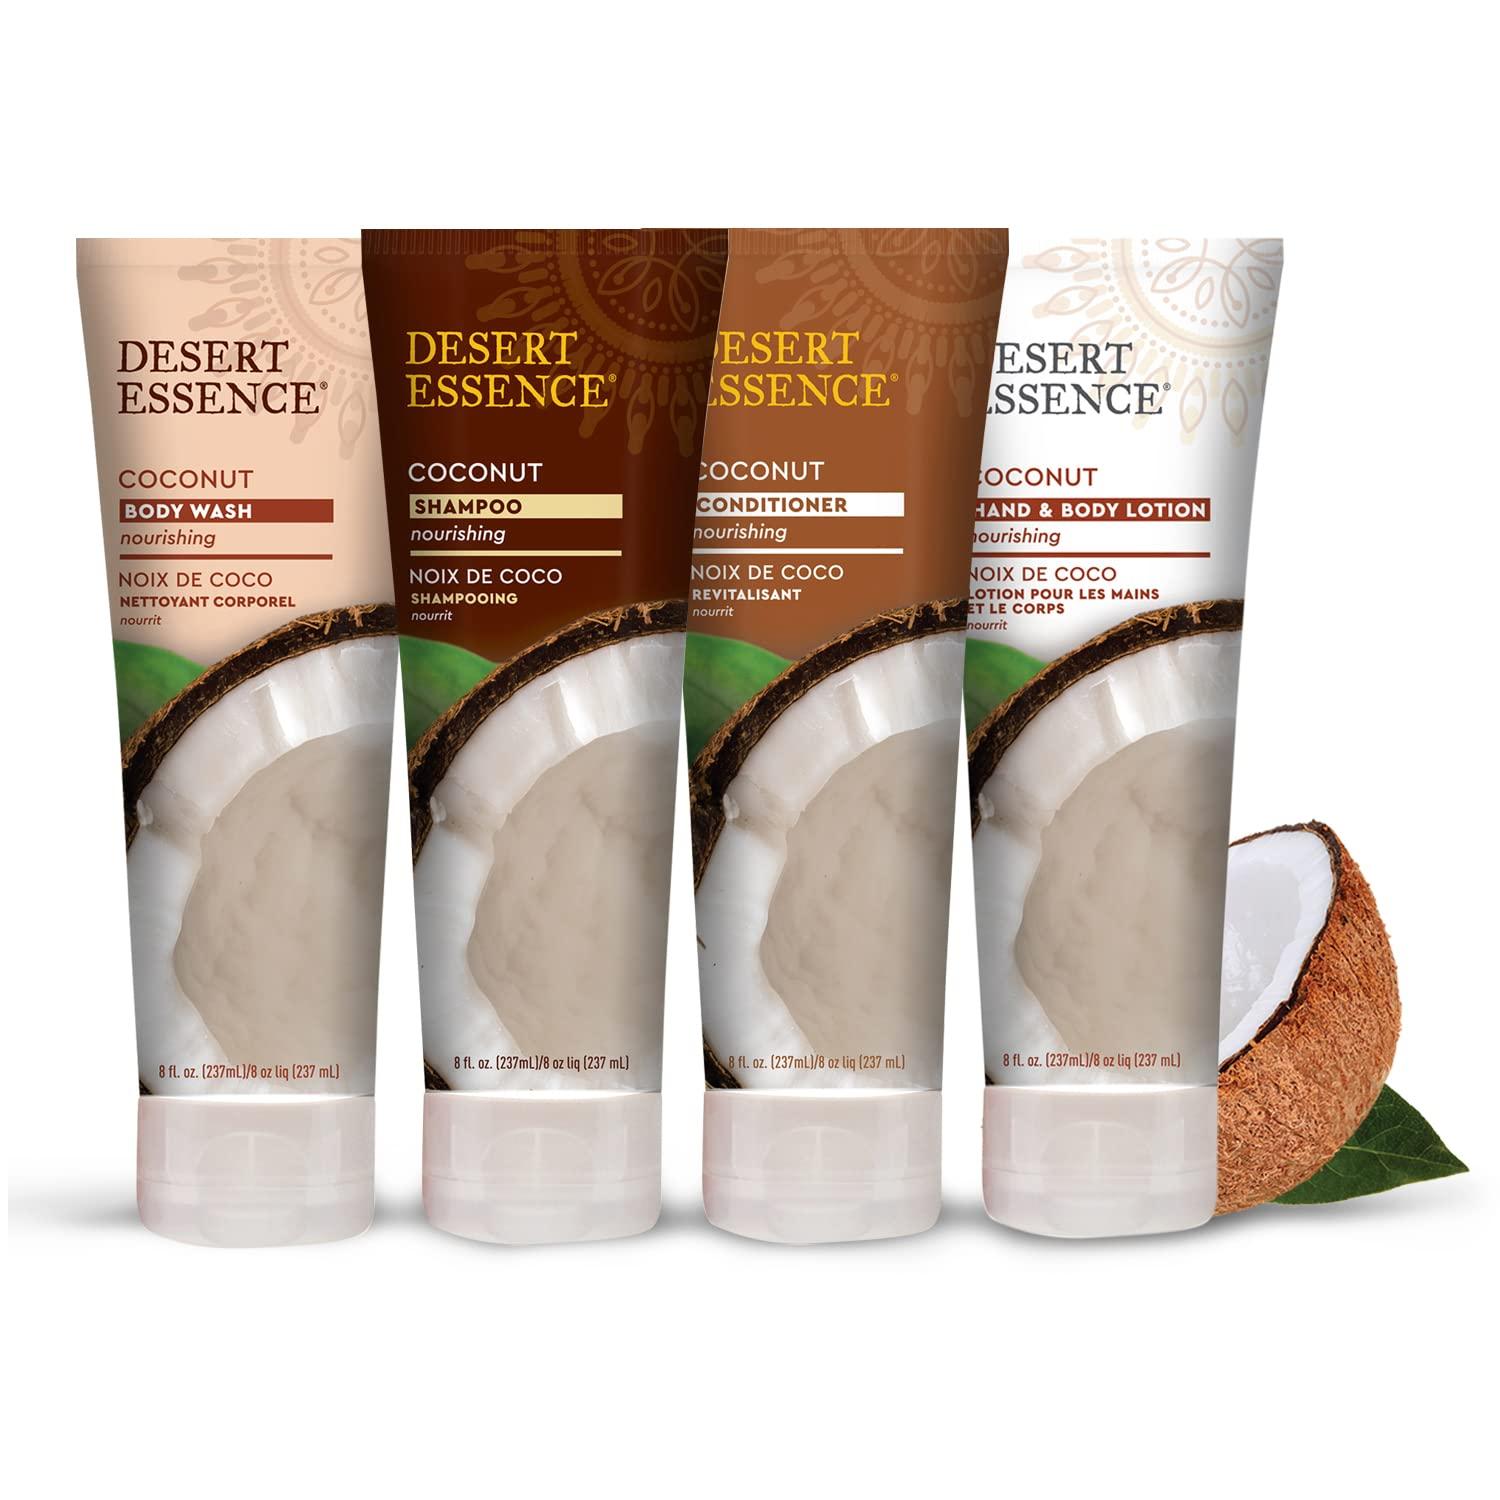 NEW Desert Essence Coconut Shampoo Nourishing for Dry Hair 8 fl.oz